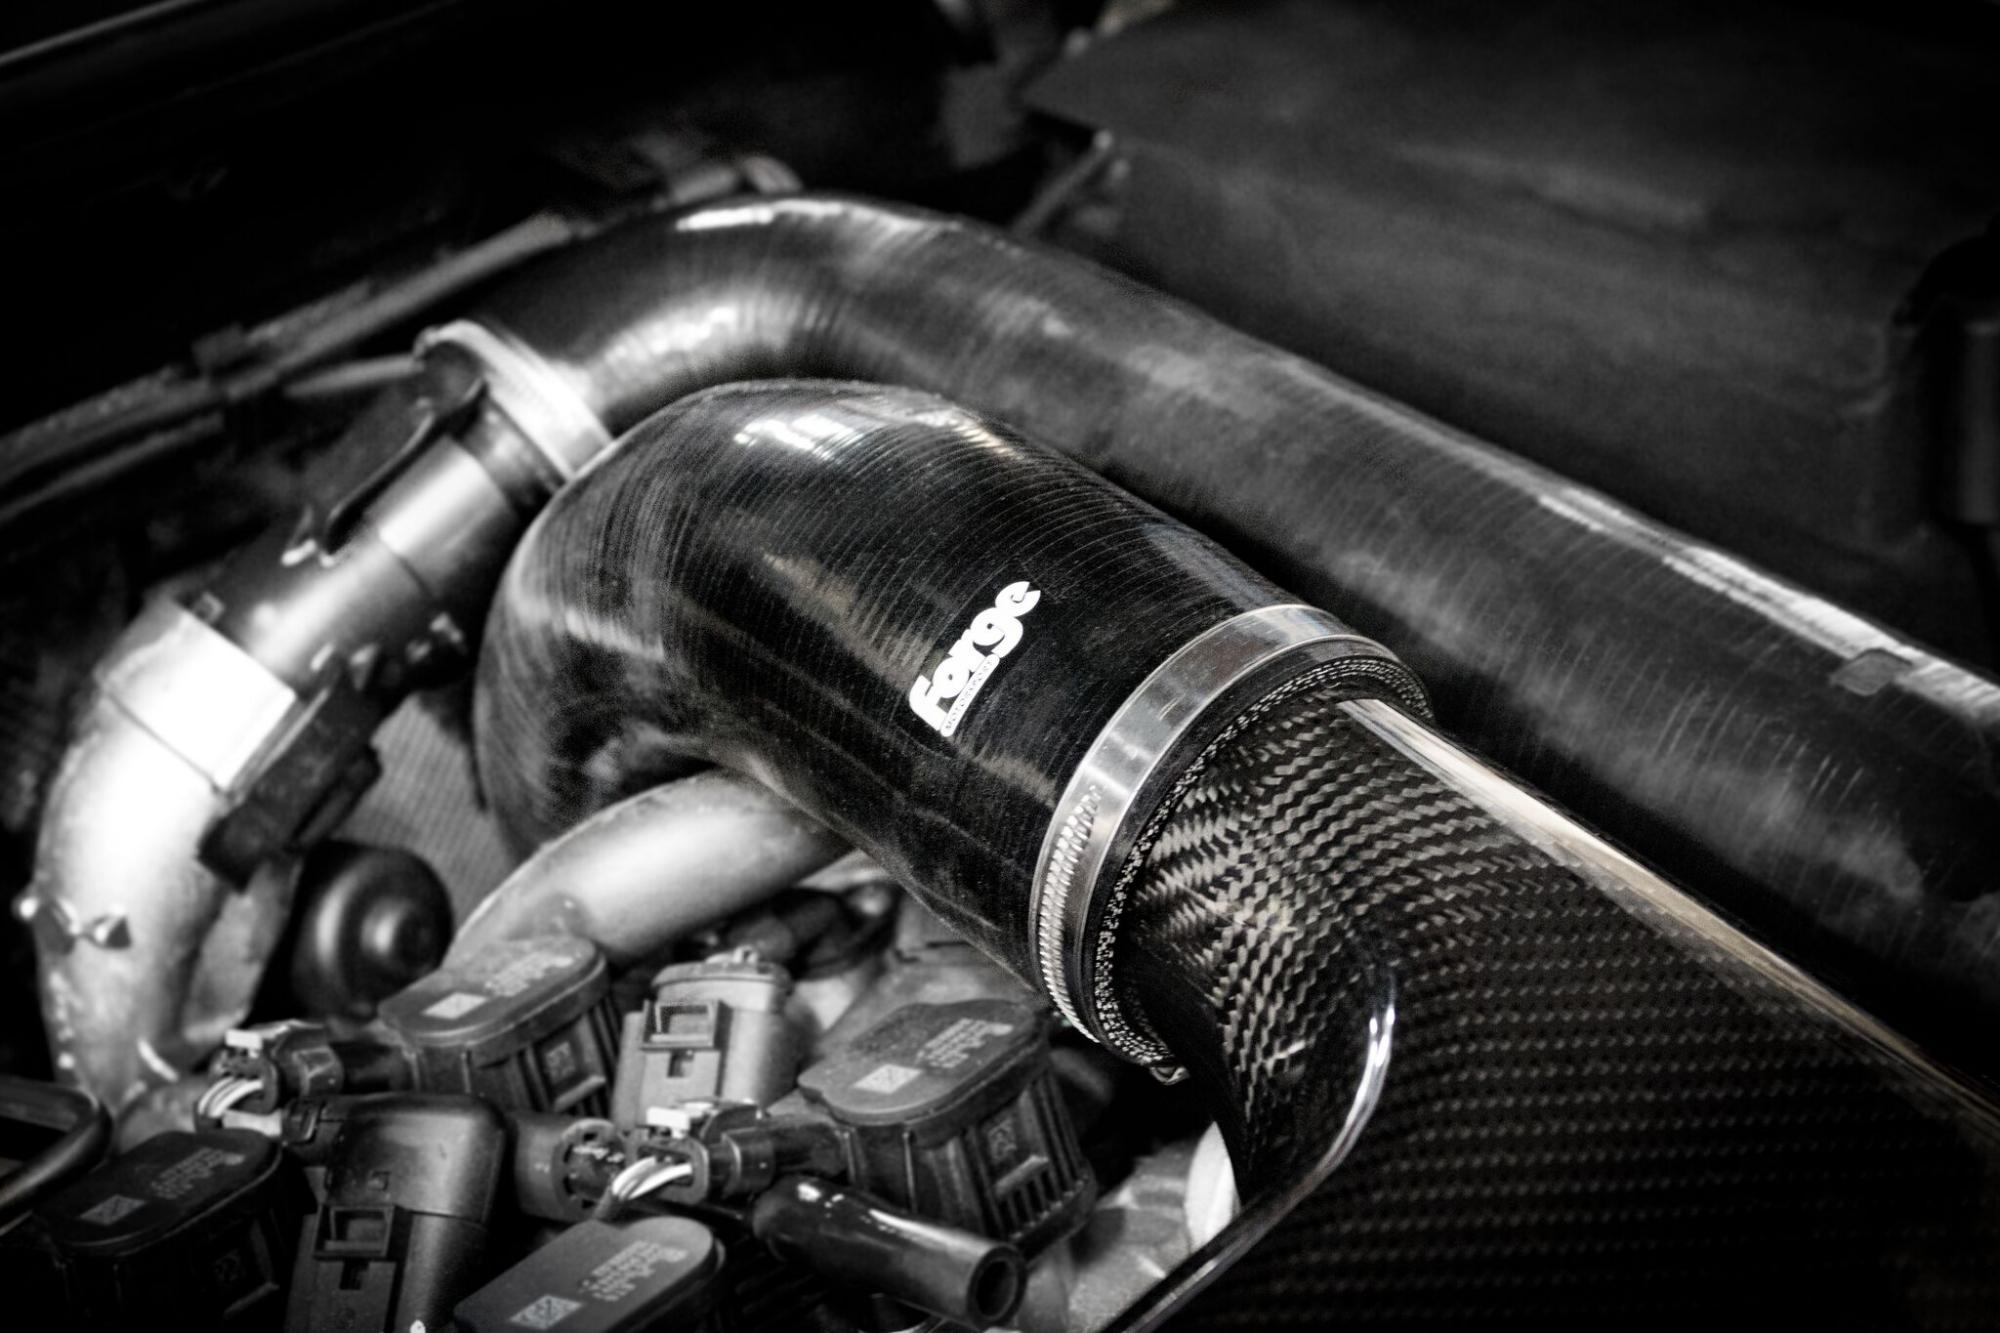 Audi,Seat, Skoda, VW  1.2. 1.4 150 & 138 BHP High Flow Carbon Intake